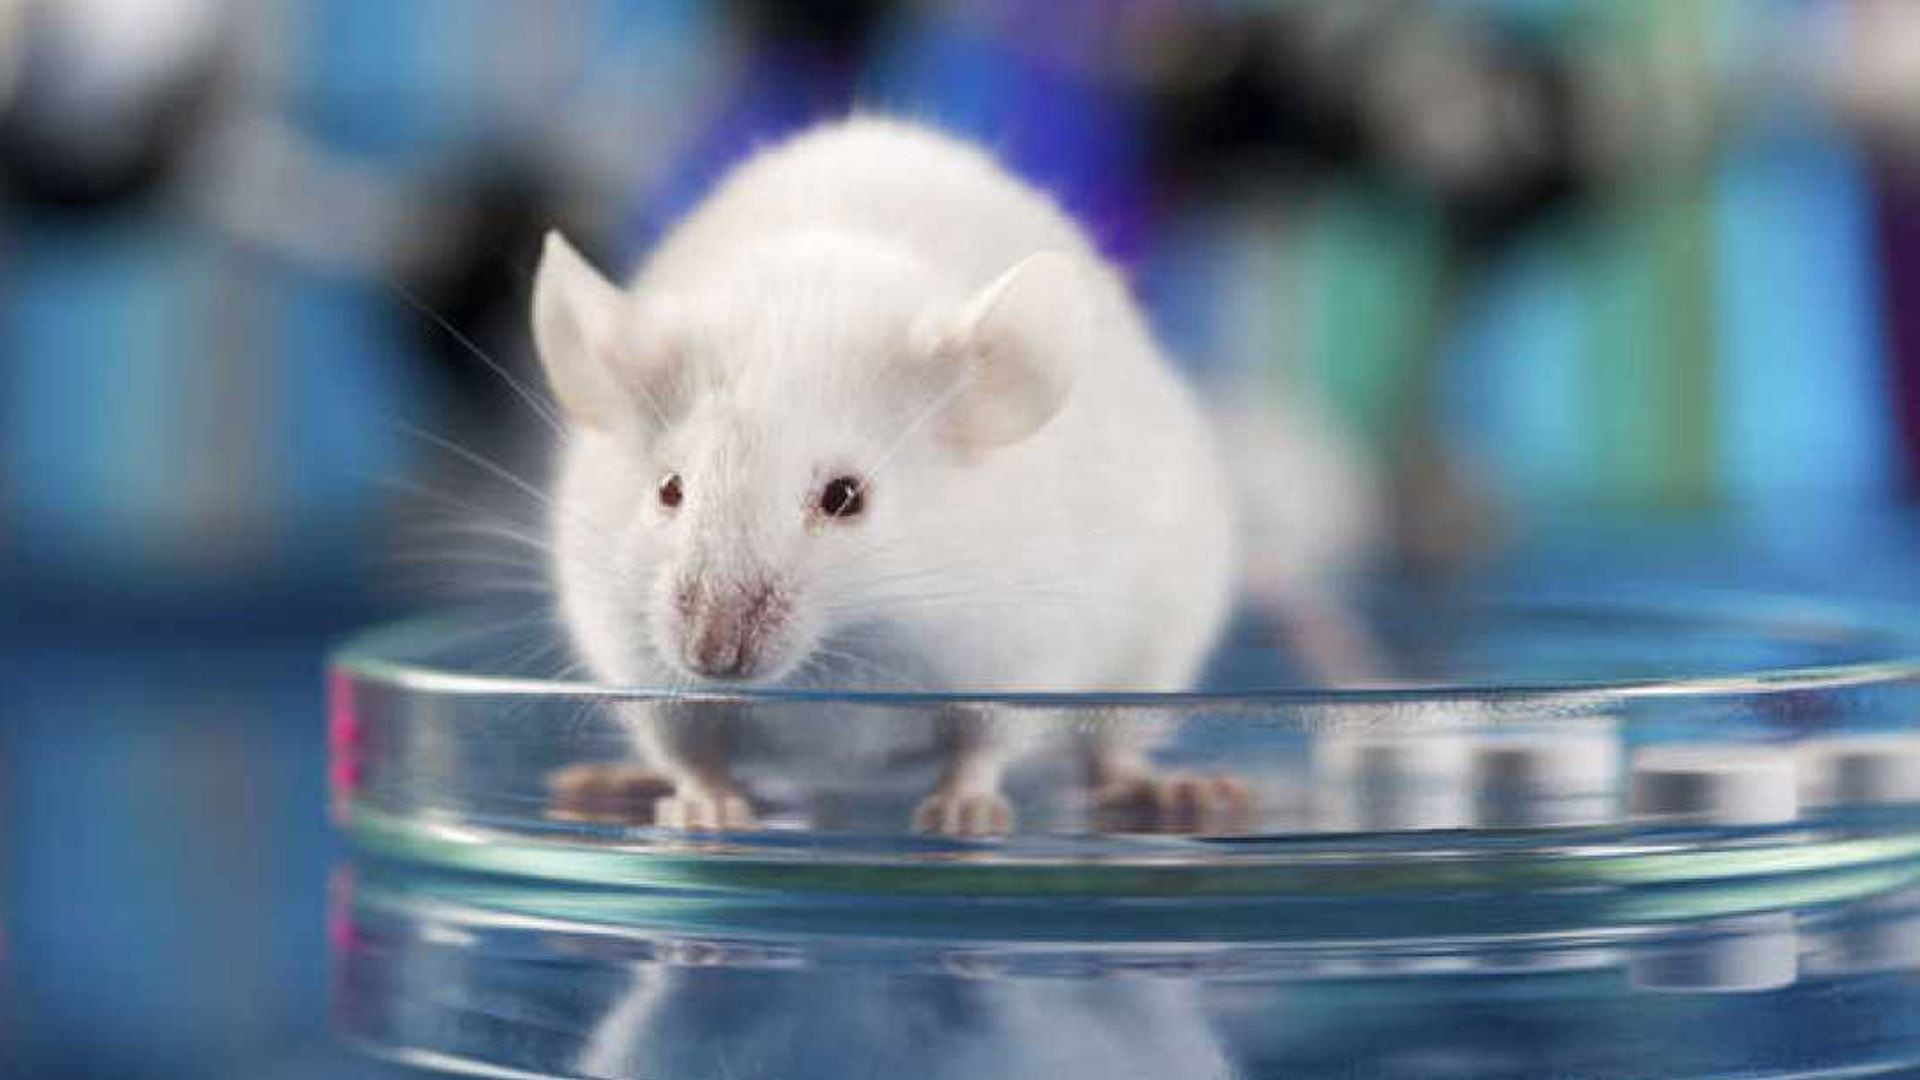 Los ratones alimentados con un horario restringido tenían mejor memoria, eran menos hiperactivos por la noche y experimentaban menos interrupciones durante el sueño, descubrieron en el estudio (MS)